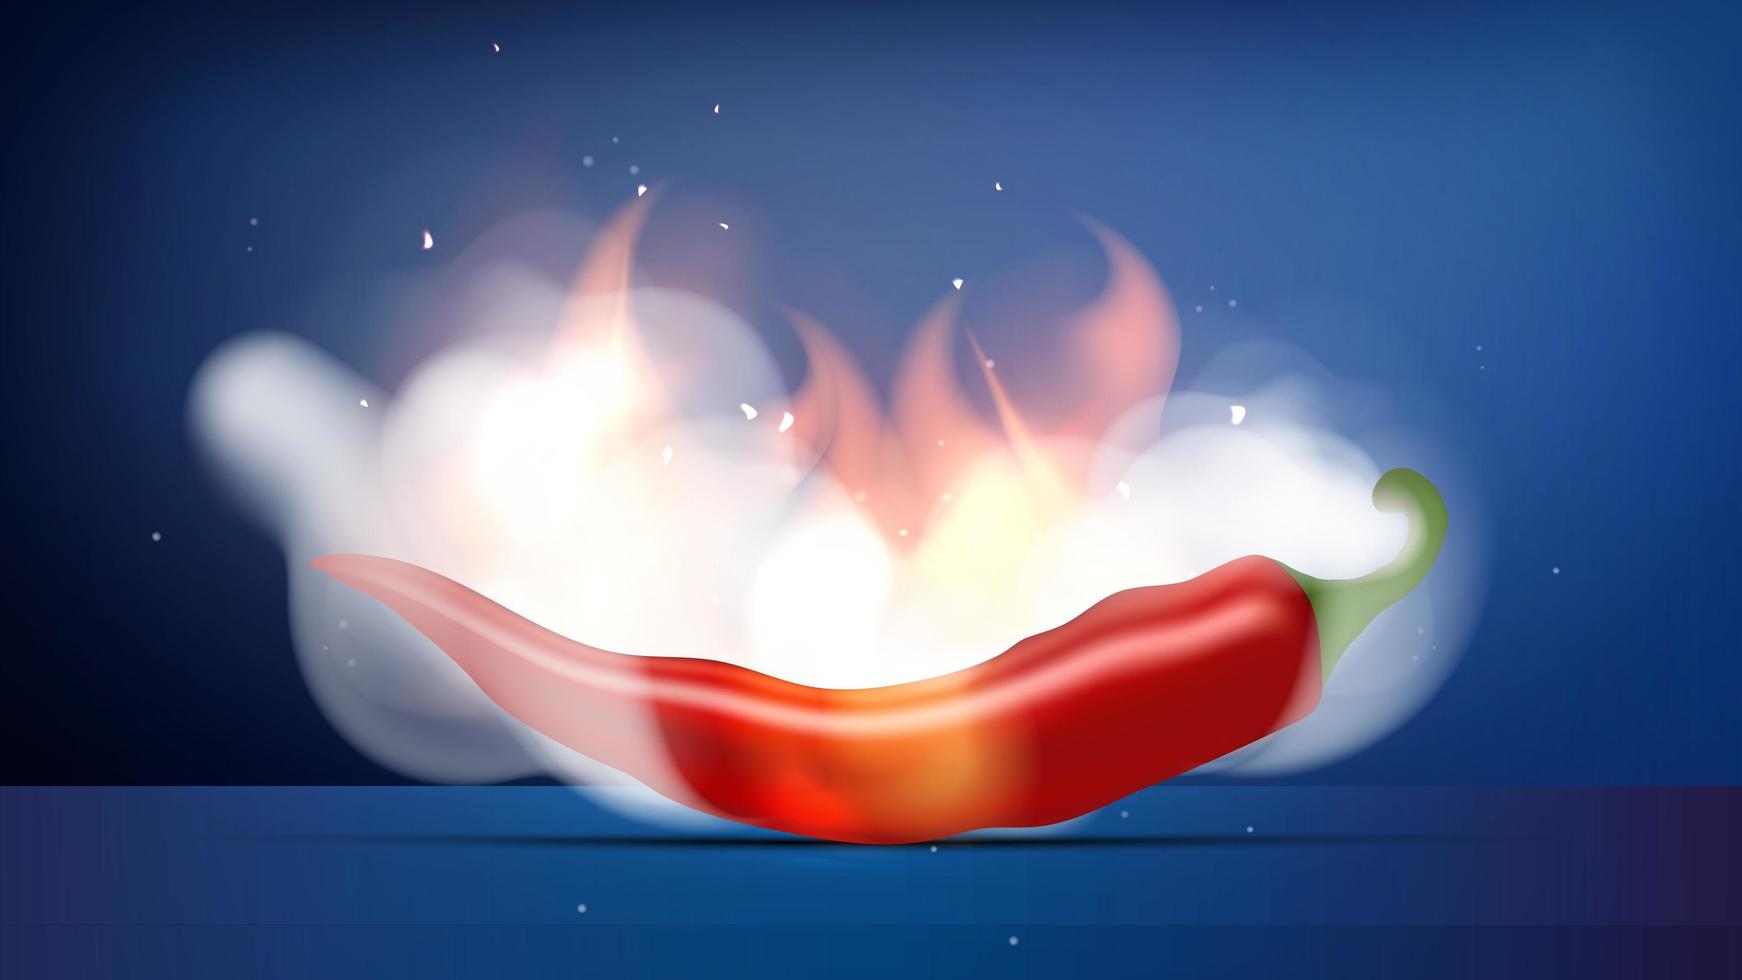 röd het paprika i brand och rök. chilipeppar vita rökmoln och lågor. redo affisch eller banner för reklam. realistisk stil. vektor illustration.